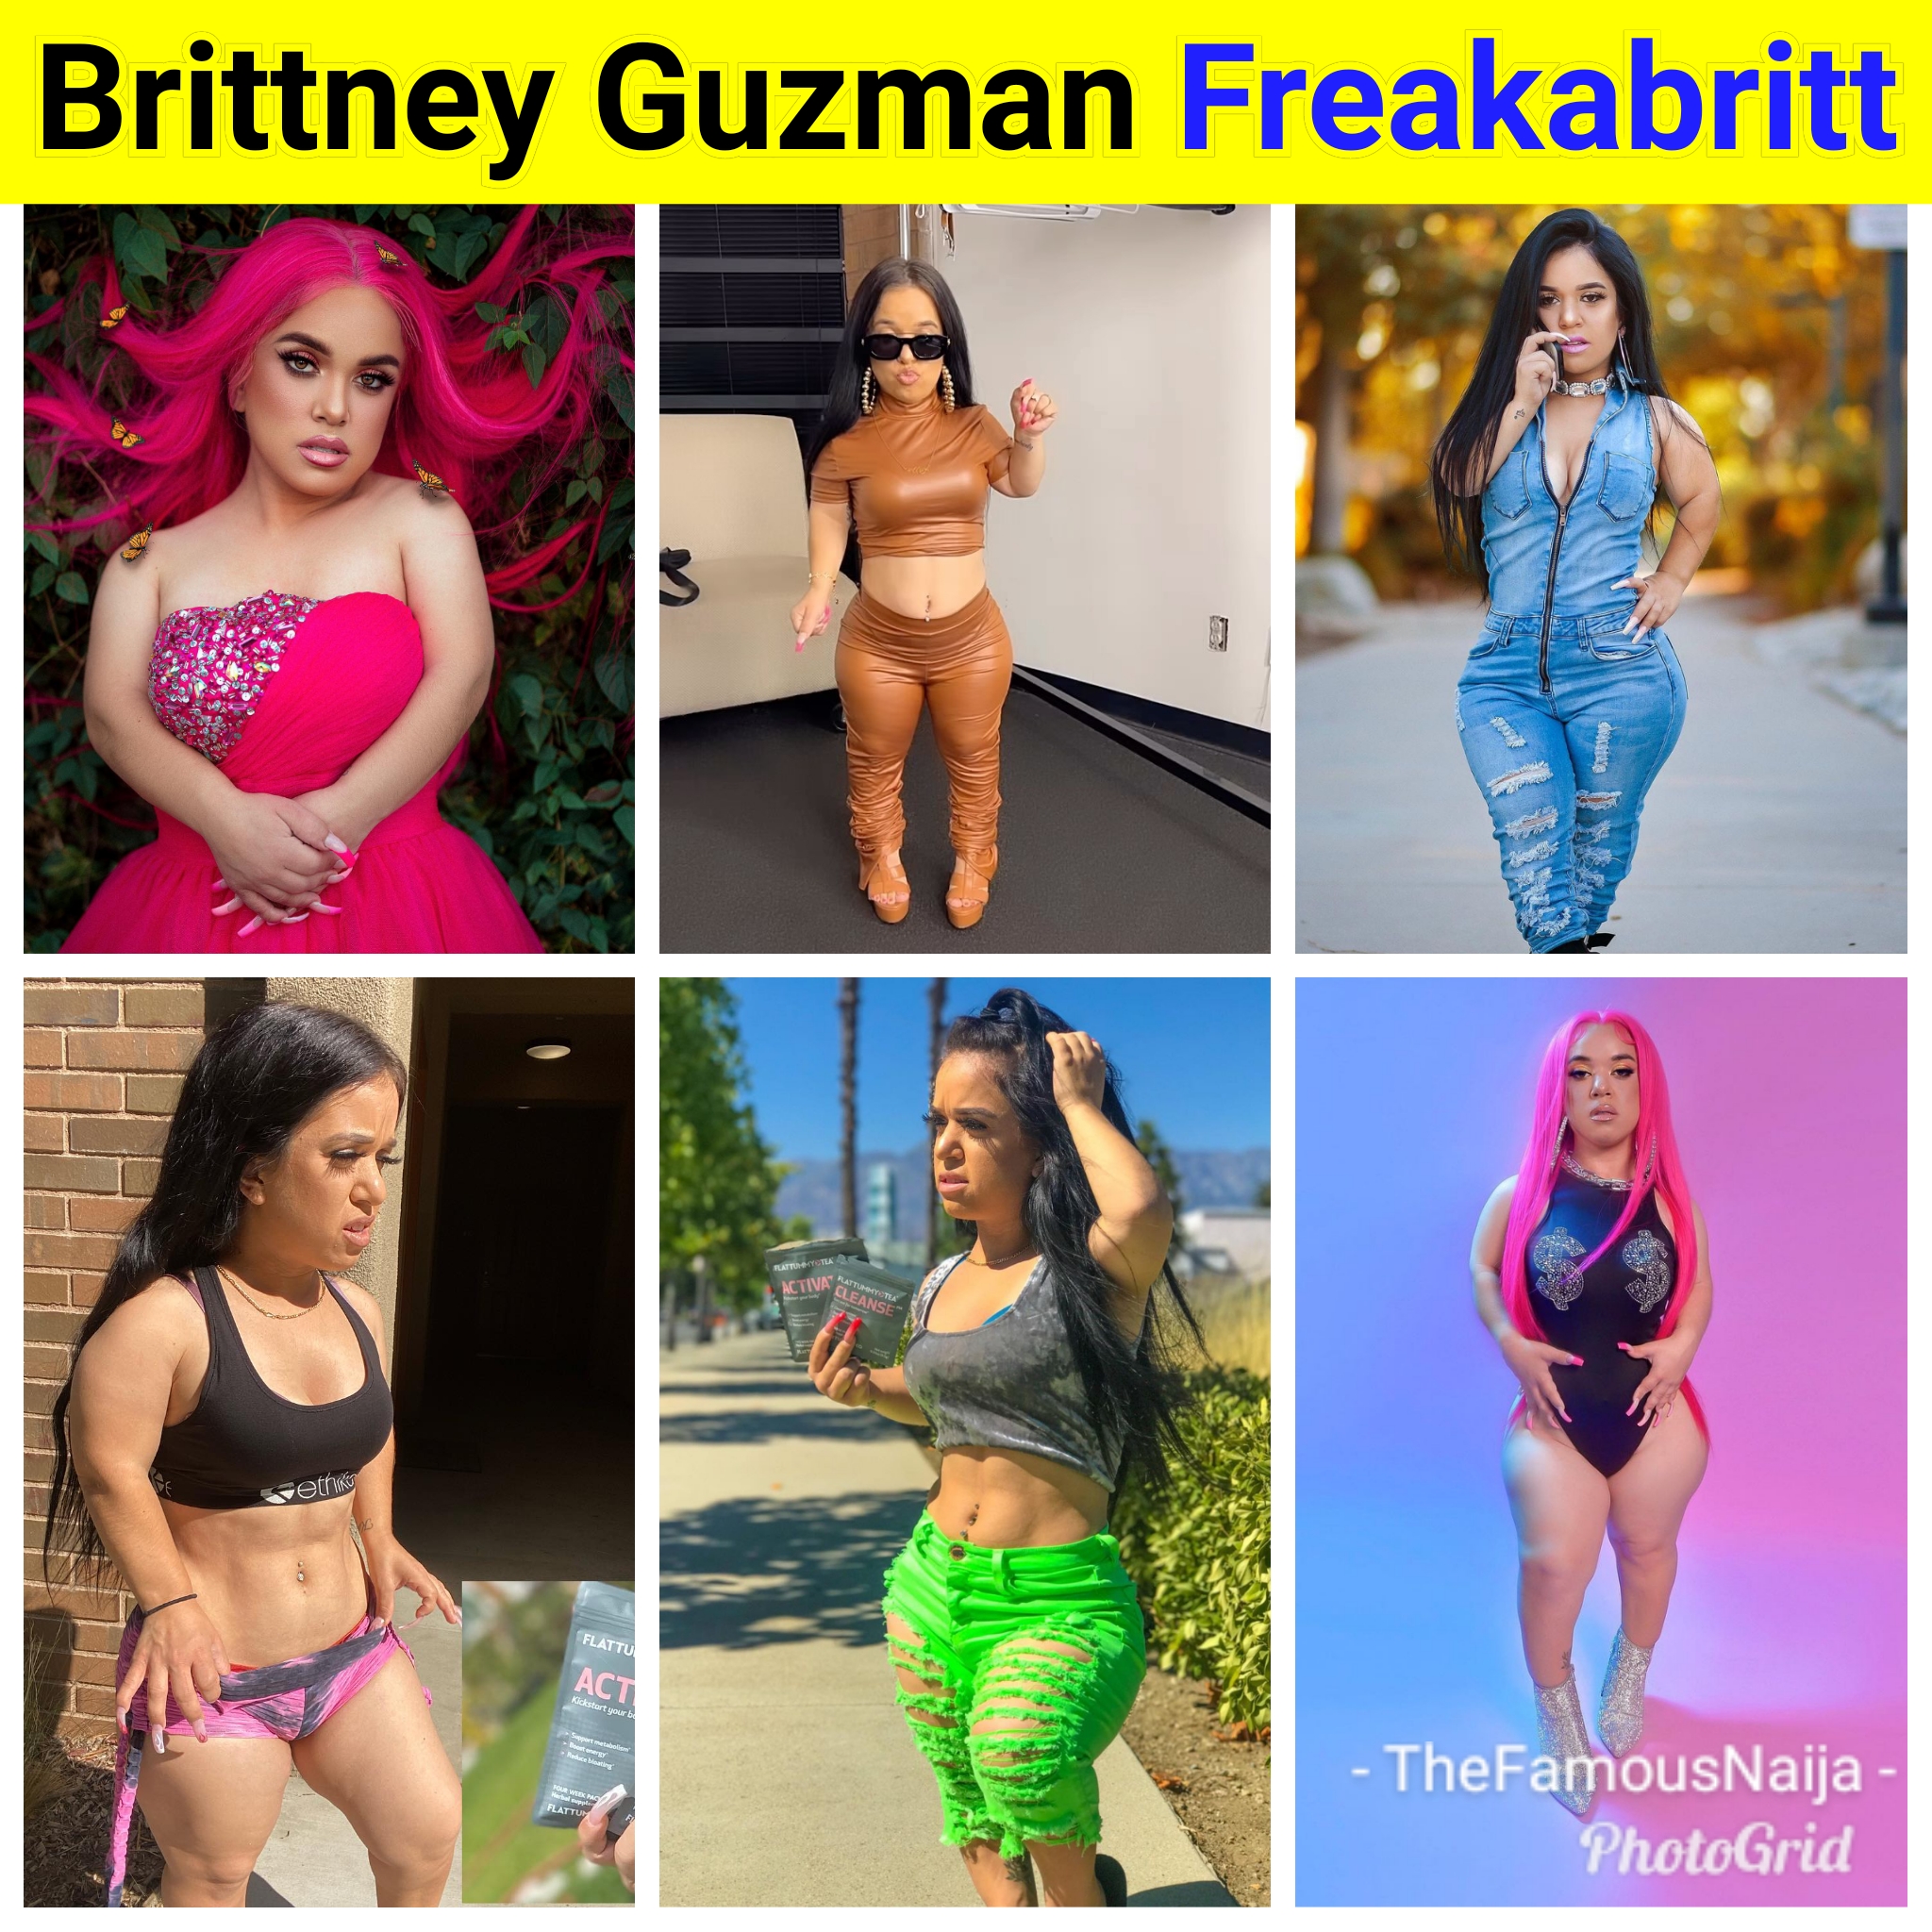 Brittney Guzman (Freakabritt) Biography, Age, Pictures, Height, Boyfriend,  Parents, Net Worth, Wikipedia